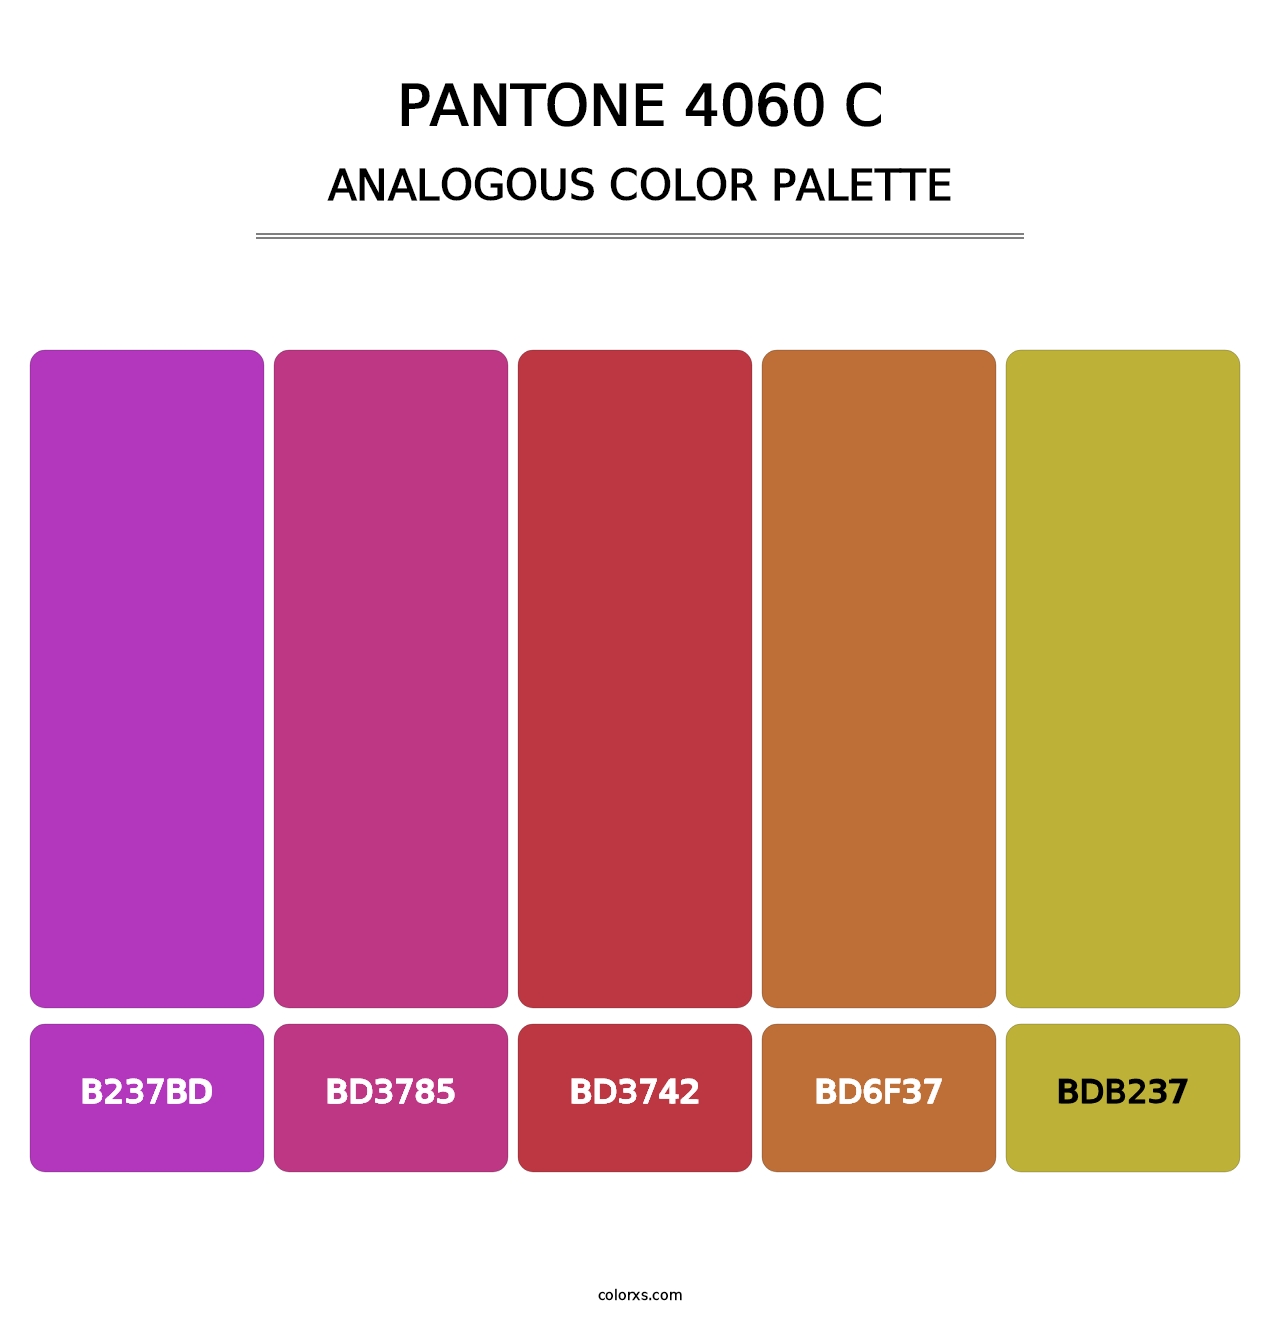 PANTONE 4060 C - Analogous Color Palette